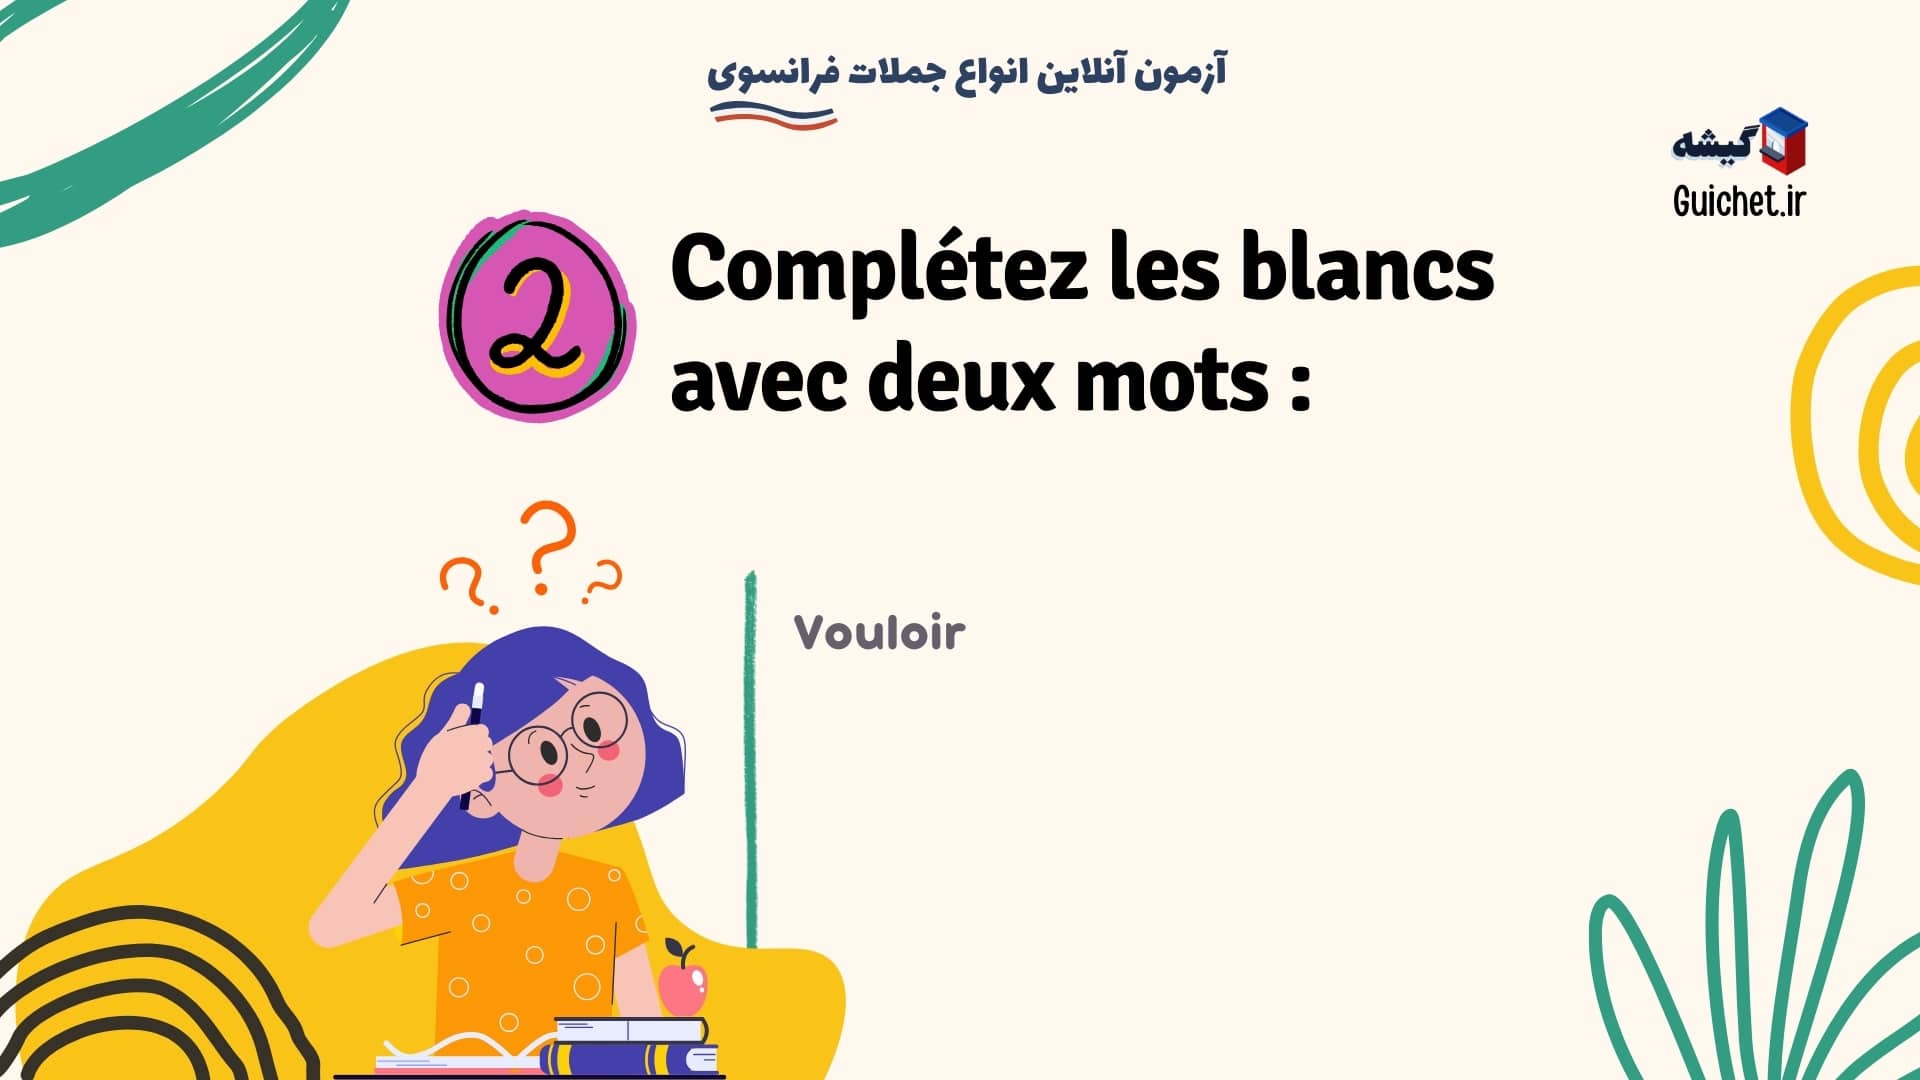 آزمون آنلاین - درس های رایگان فرانسوی